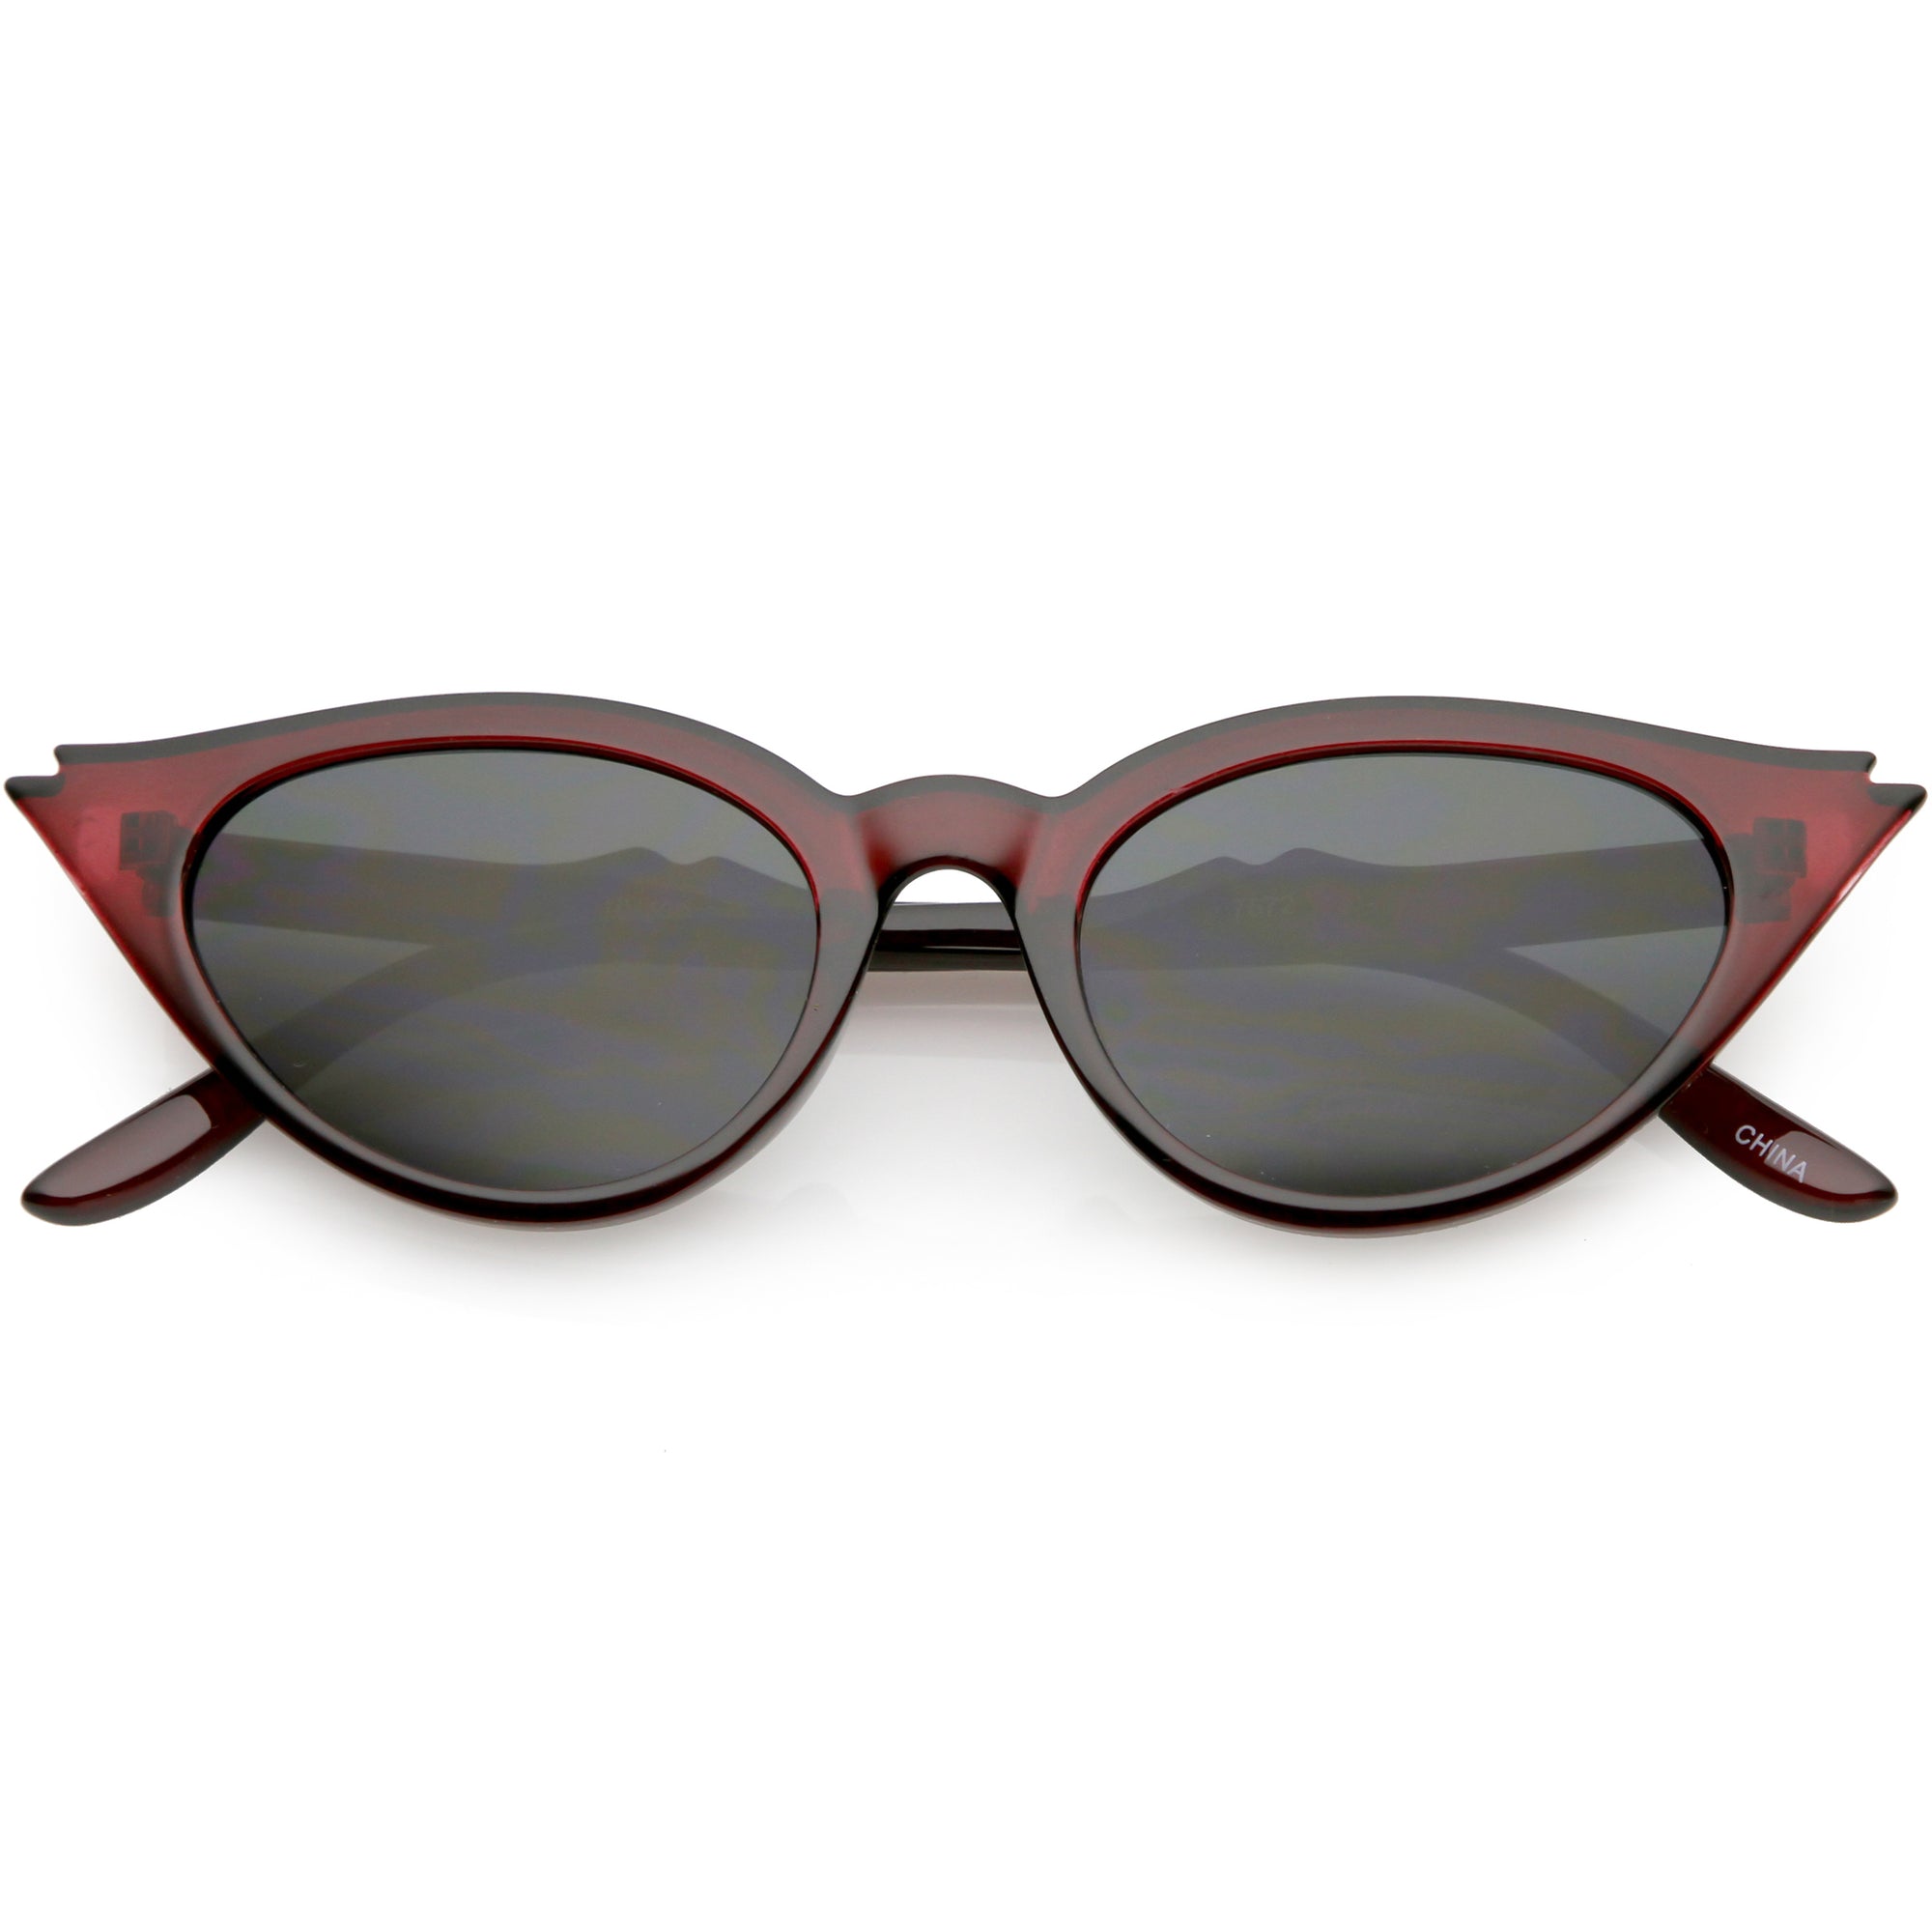 Gafas de sol estilo ojo de gato con muescas retro de los años 50 para mujer C756